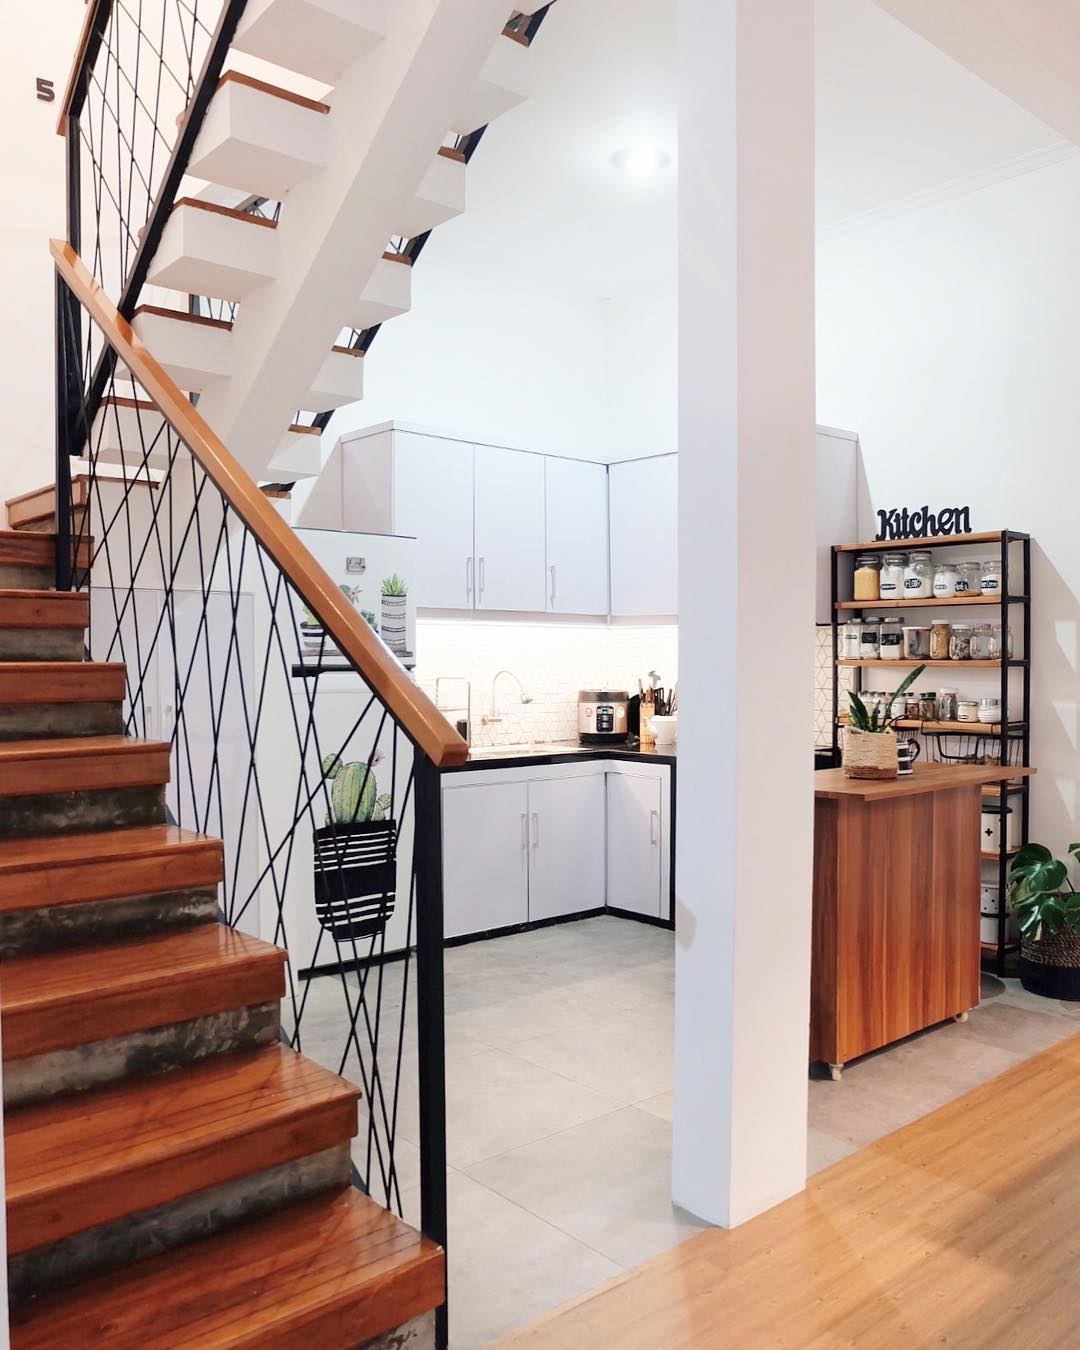 Desain Interior Dapur Minimalis Ukuran 3x3 M Dengan Sentuhan Ala Scandinavian Industrial Inspirasi Desain Rumah Terkini